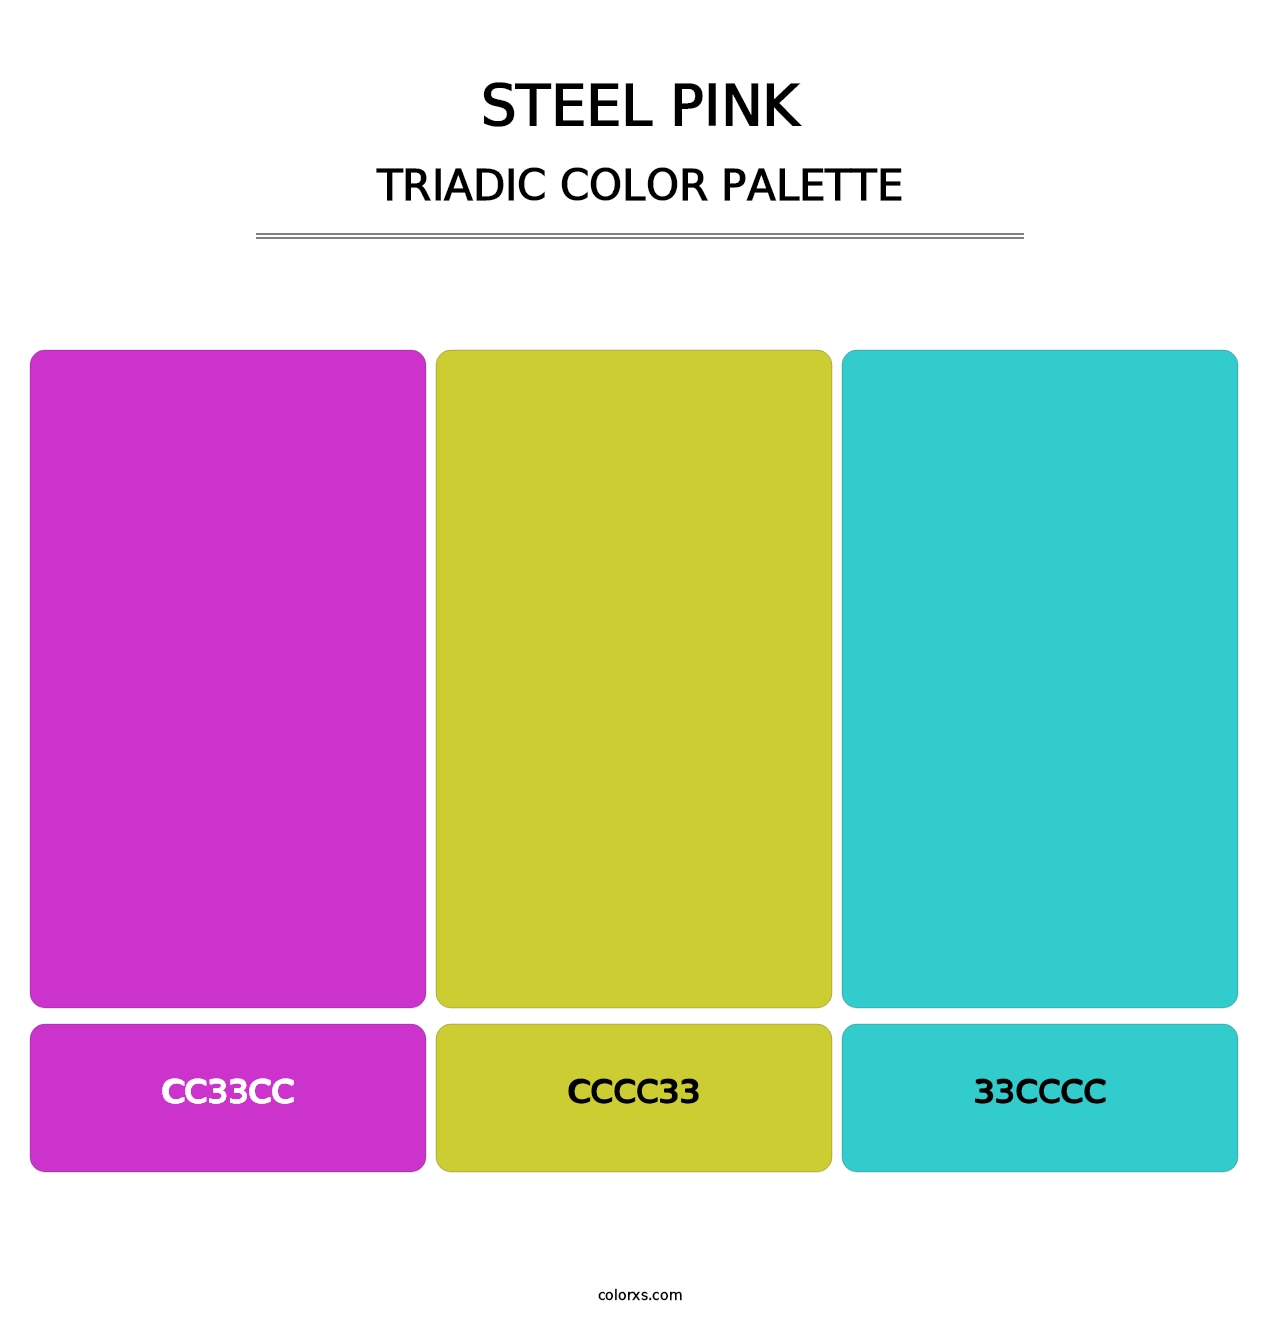 Steel Pink - Triadic Color Palette